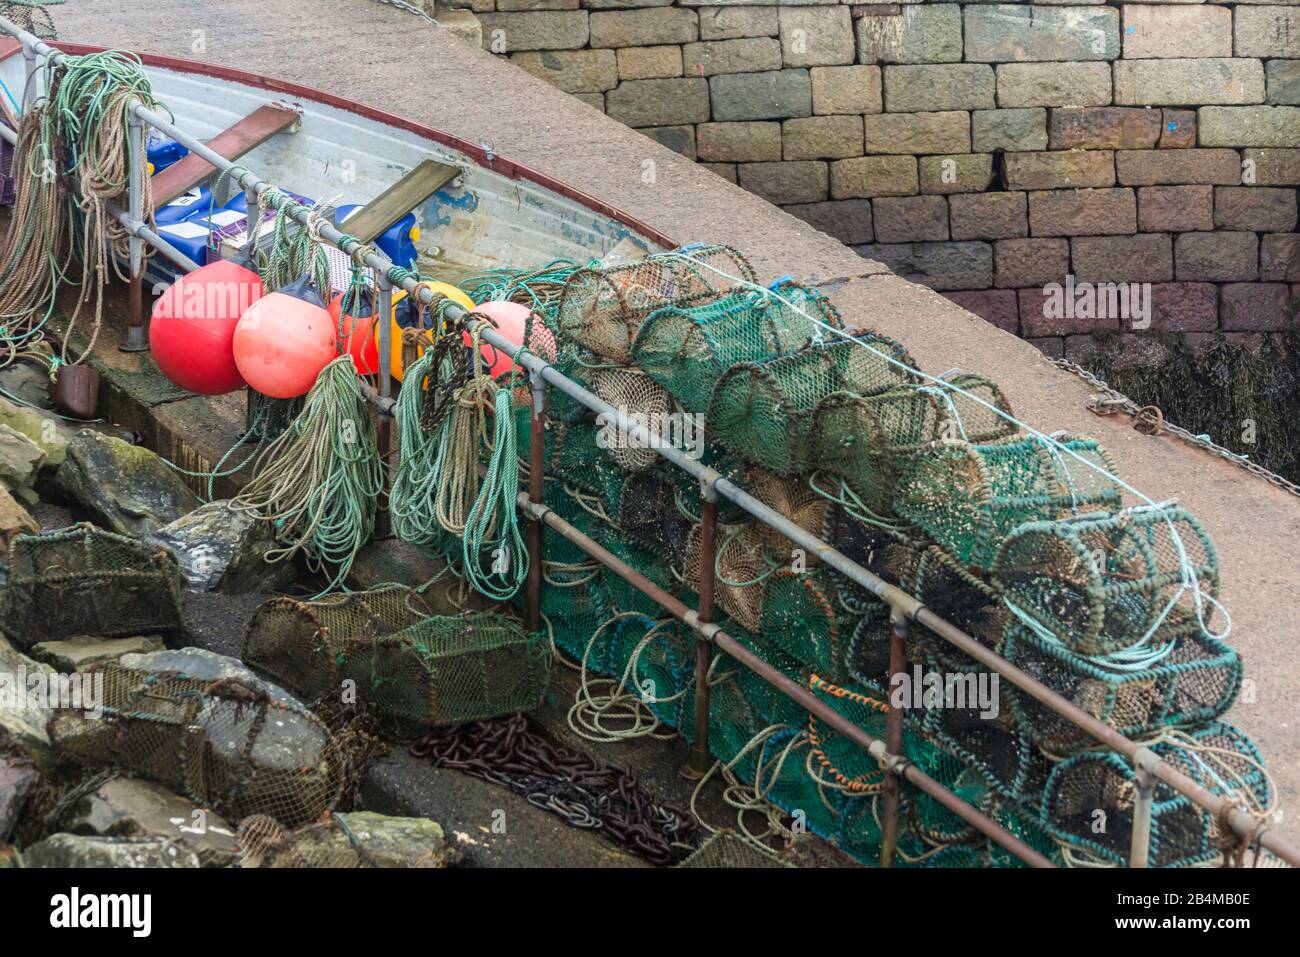 Grande-Bretagne, Écosse, fort William, bateau de pêche, bouée, cordage et piège à poissons dans le port Banque D'Images